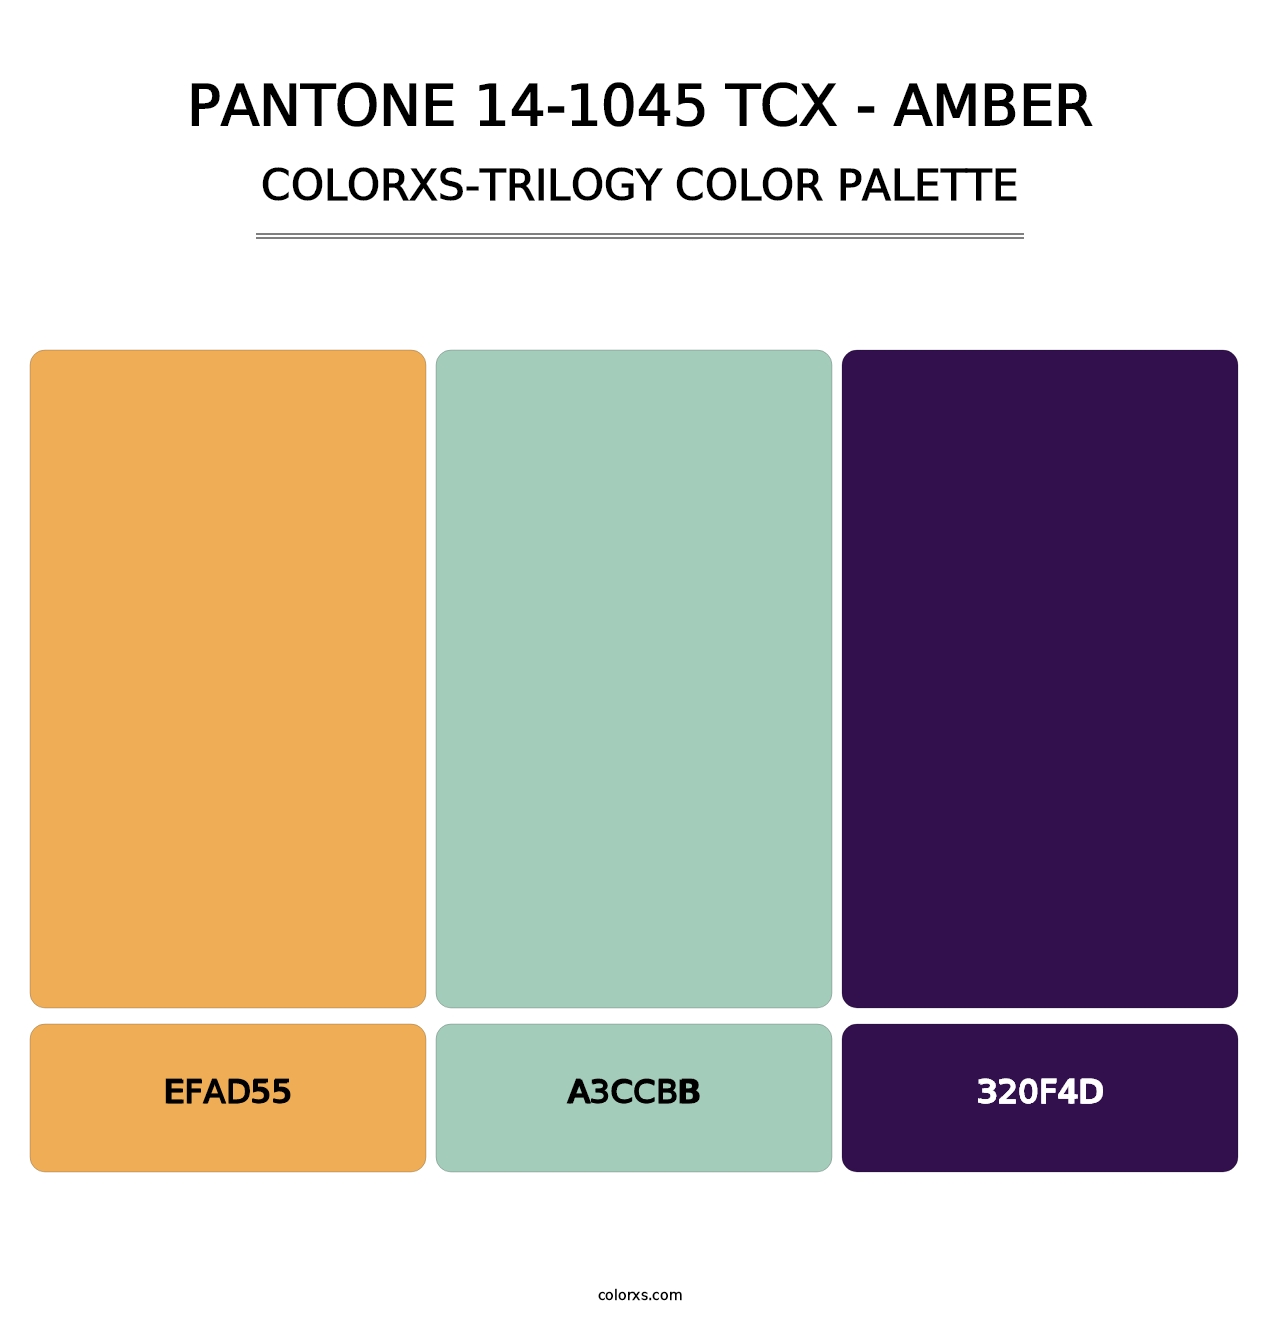 PANTONE 14-1045 TCX - Amber - Colorxs Trilogy Palette